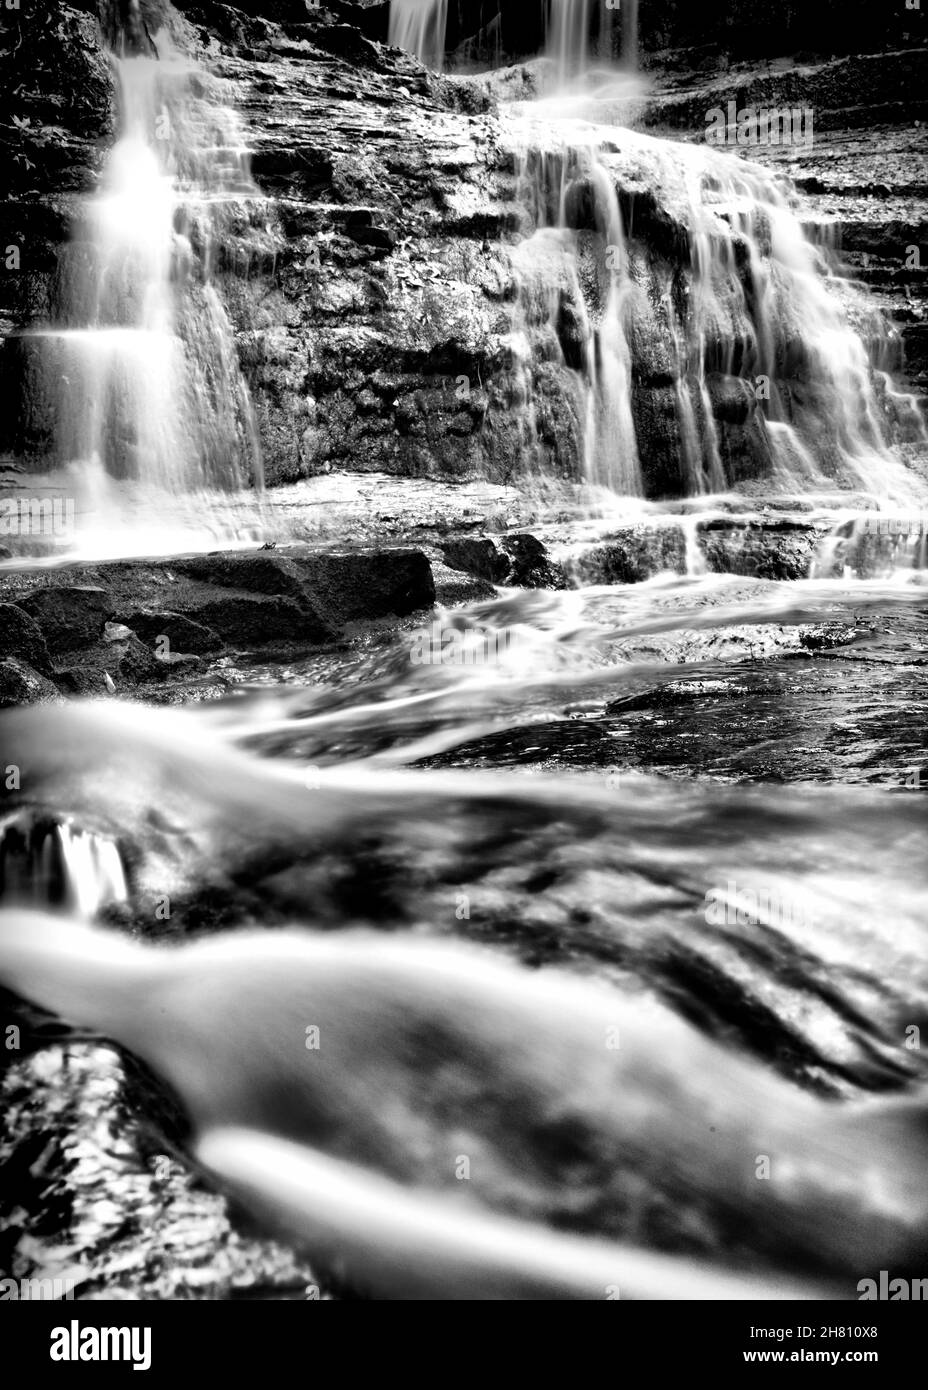 L'eau coule sur des rochers, la photographie en noir et blanc Banque D'Images